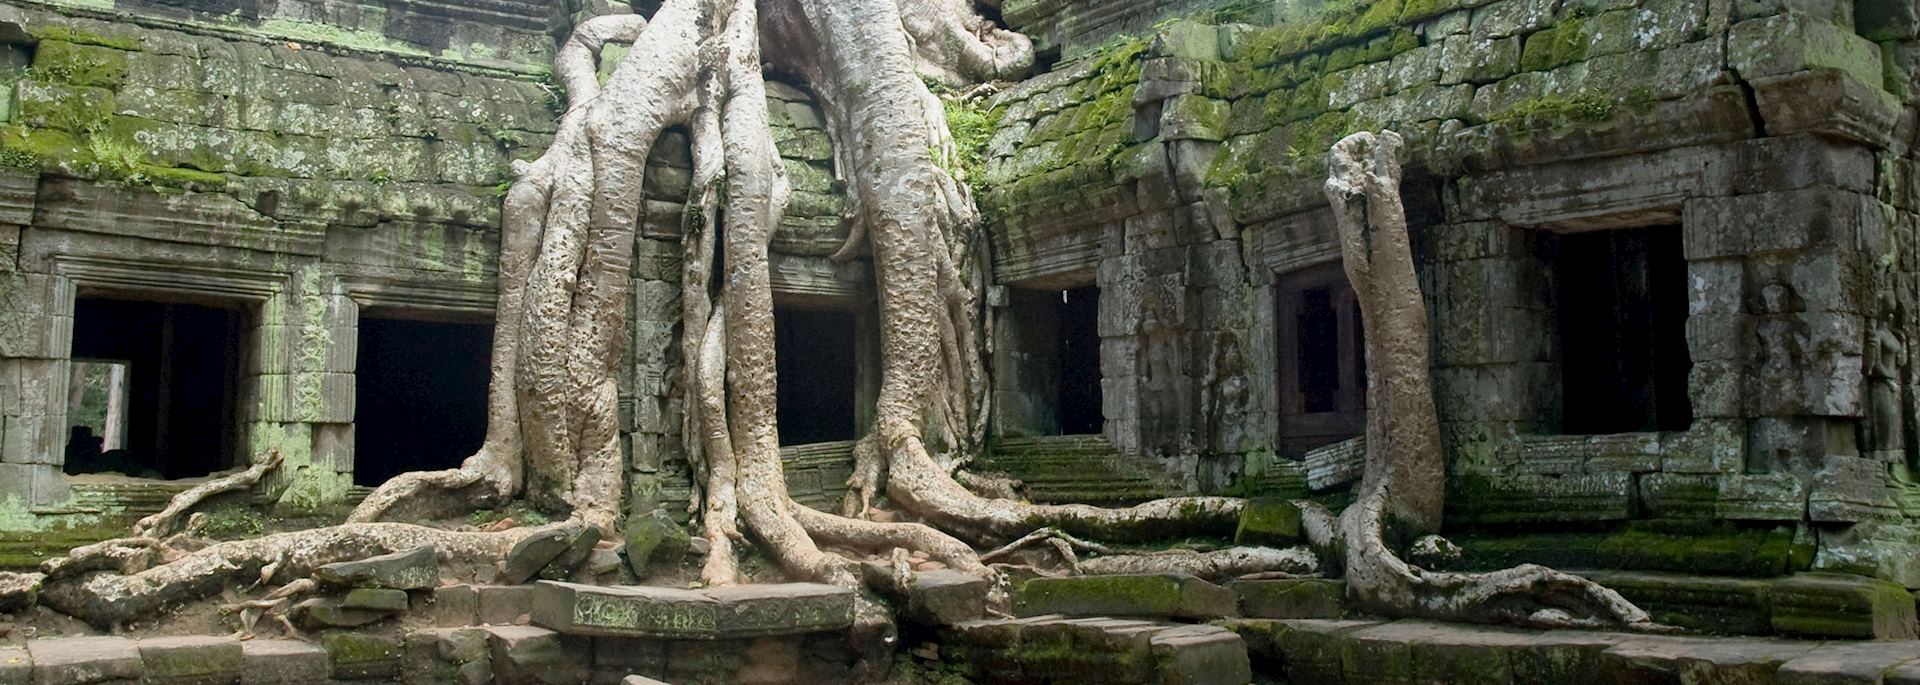 Banyan tree roots at Ta Prohm Temple, Angkor Wat, Cambodia 